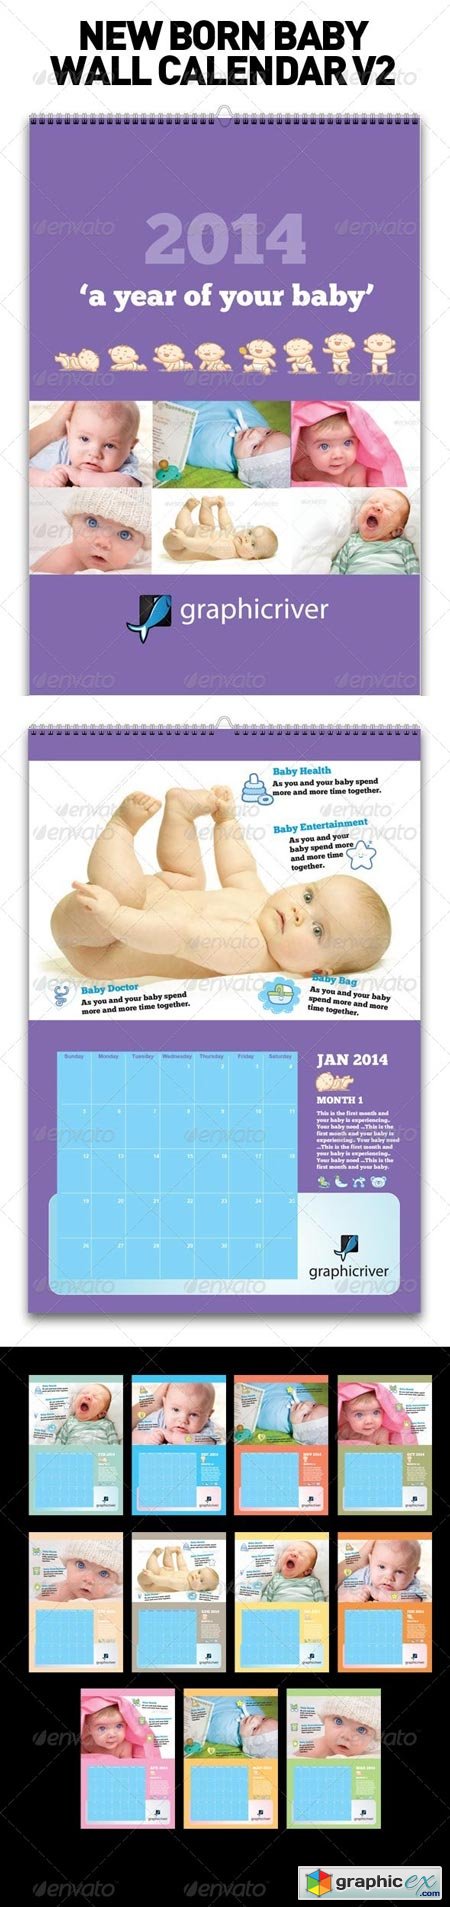 New Born Baby Wall Calendar V2 6352887